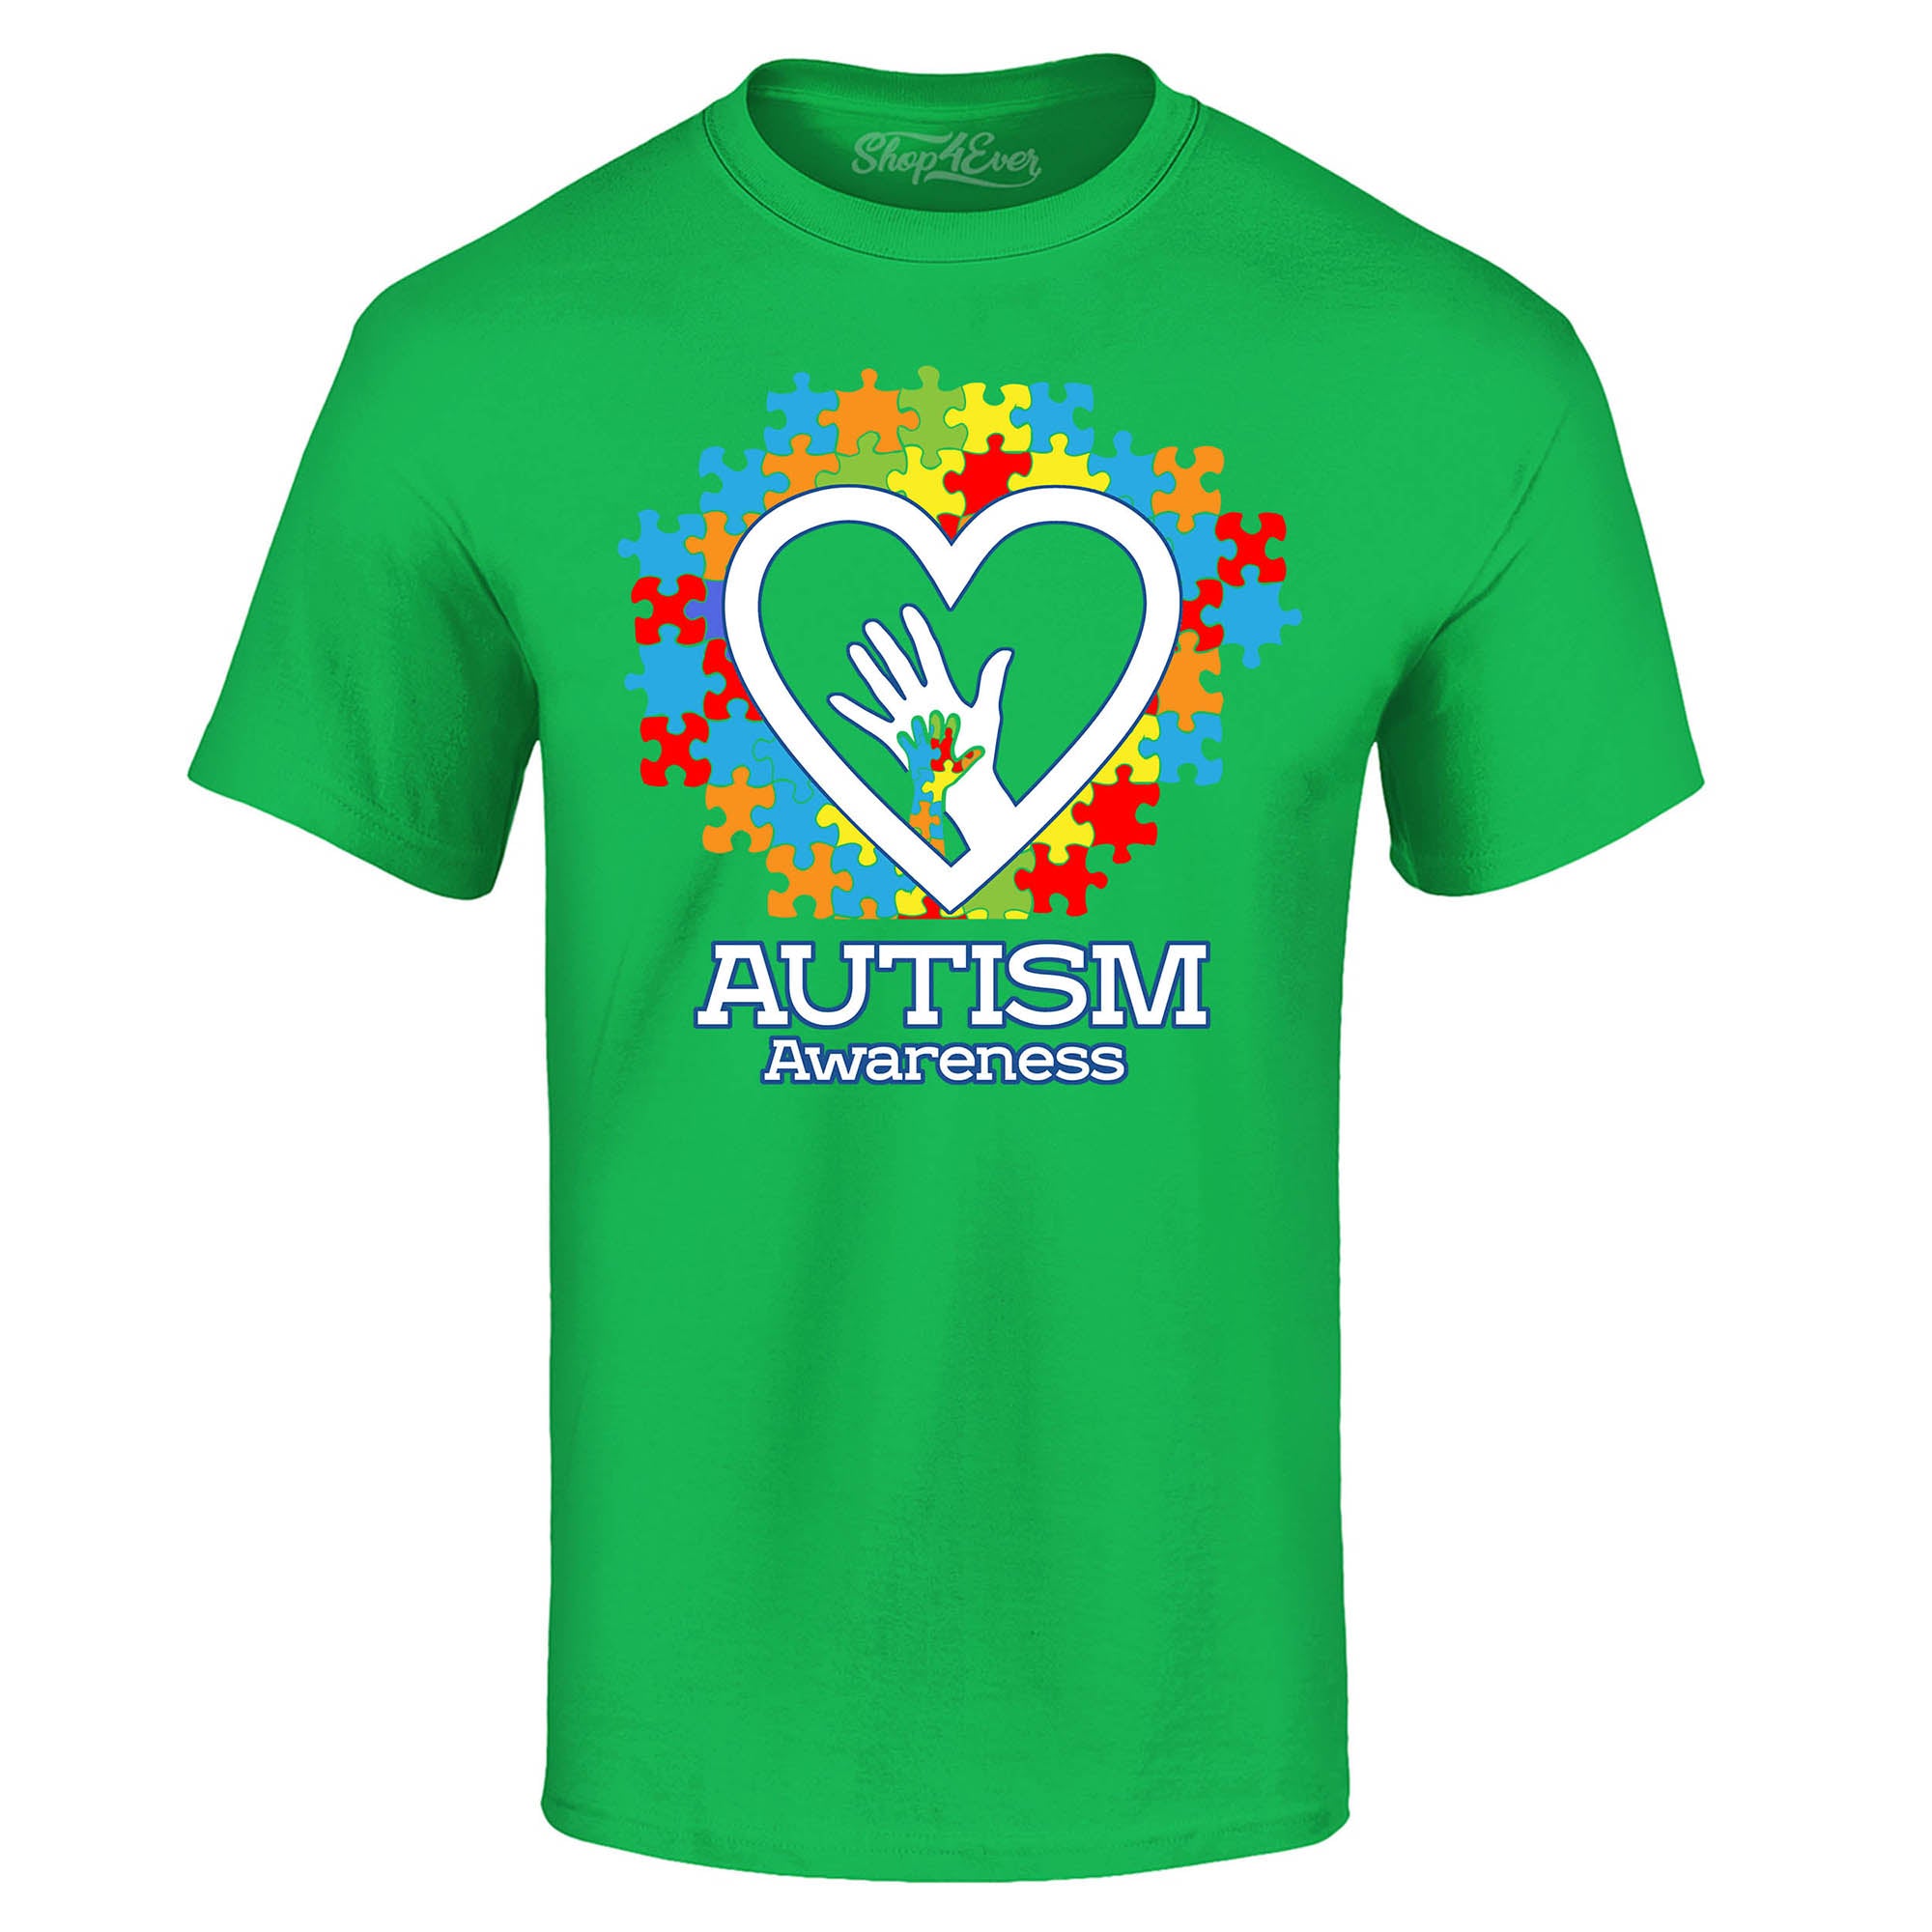 Autism Awareness Hands in Heart T-Shirt